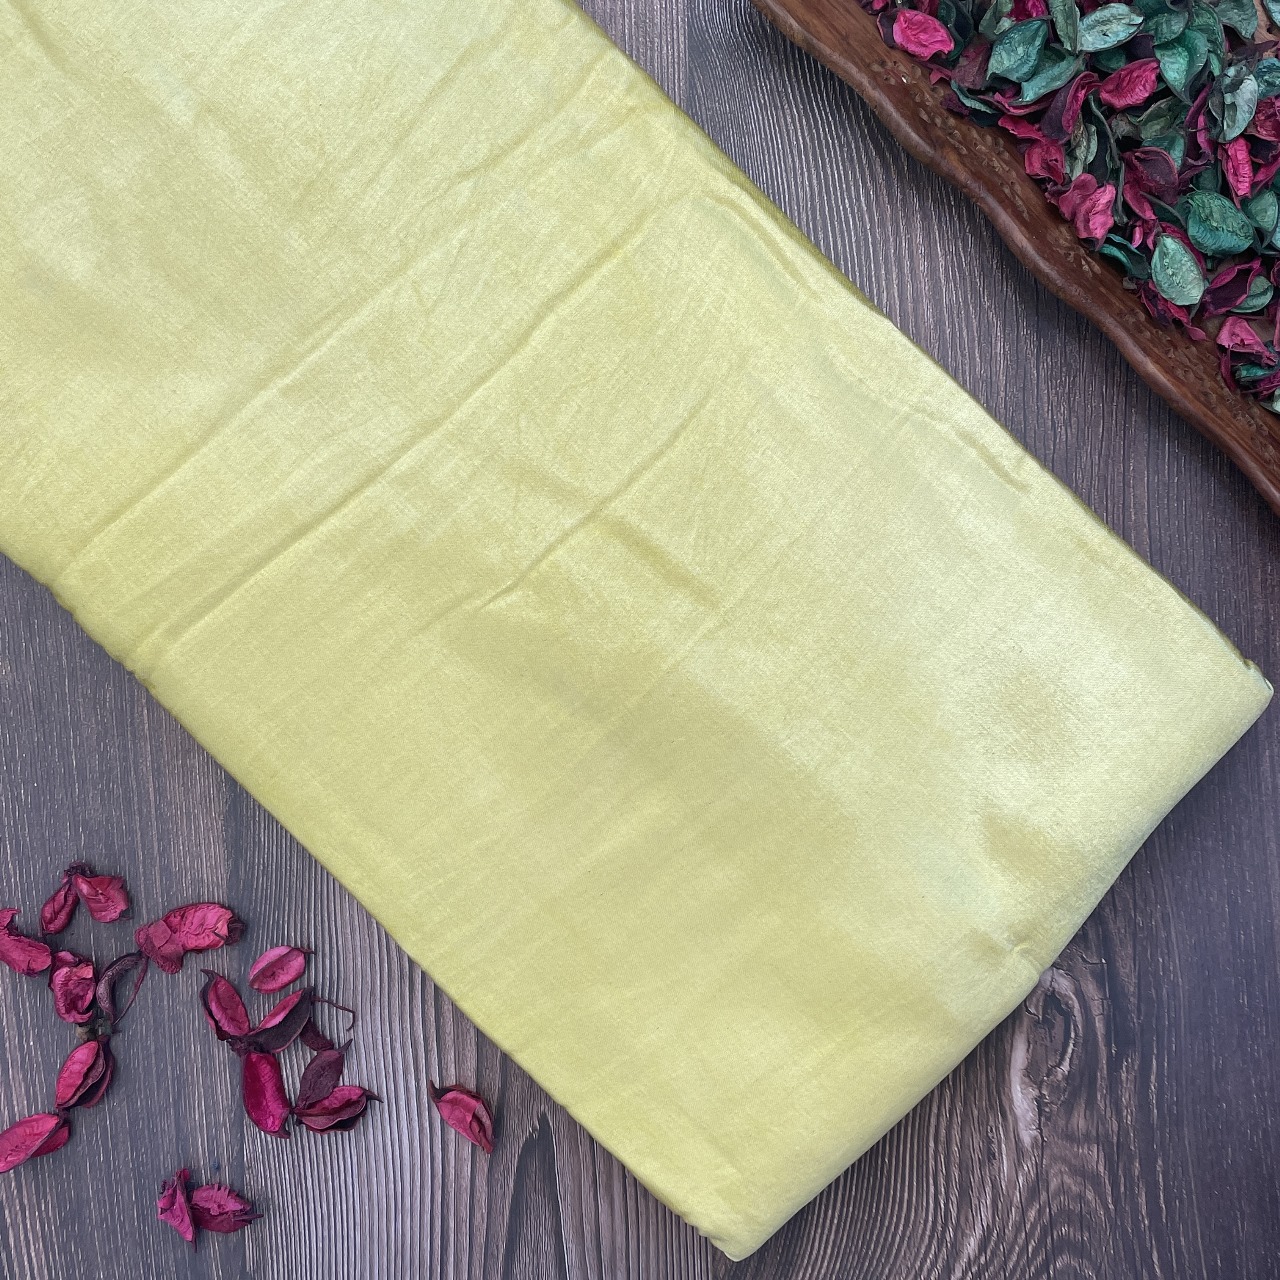 Mashru Silk Hand Block Printed Fabric - Lemon Yellow